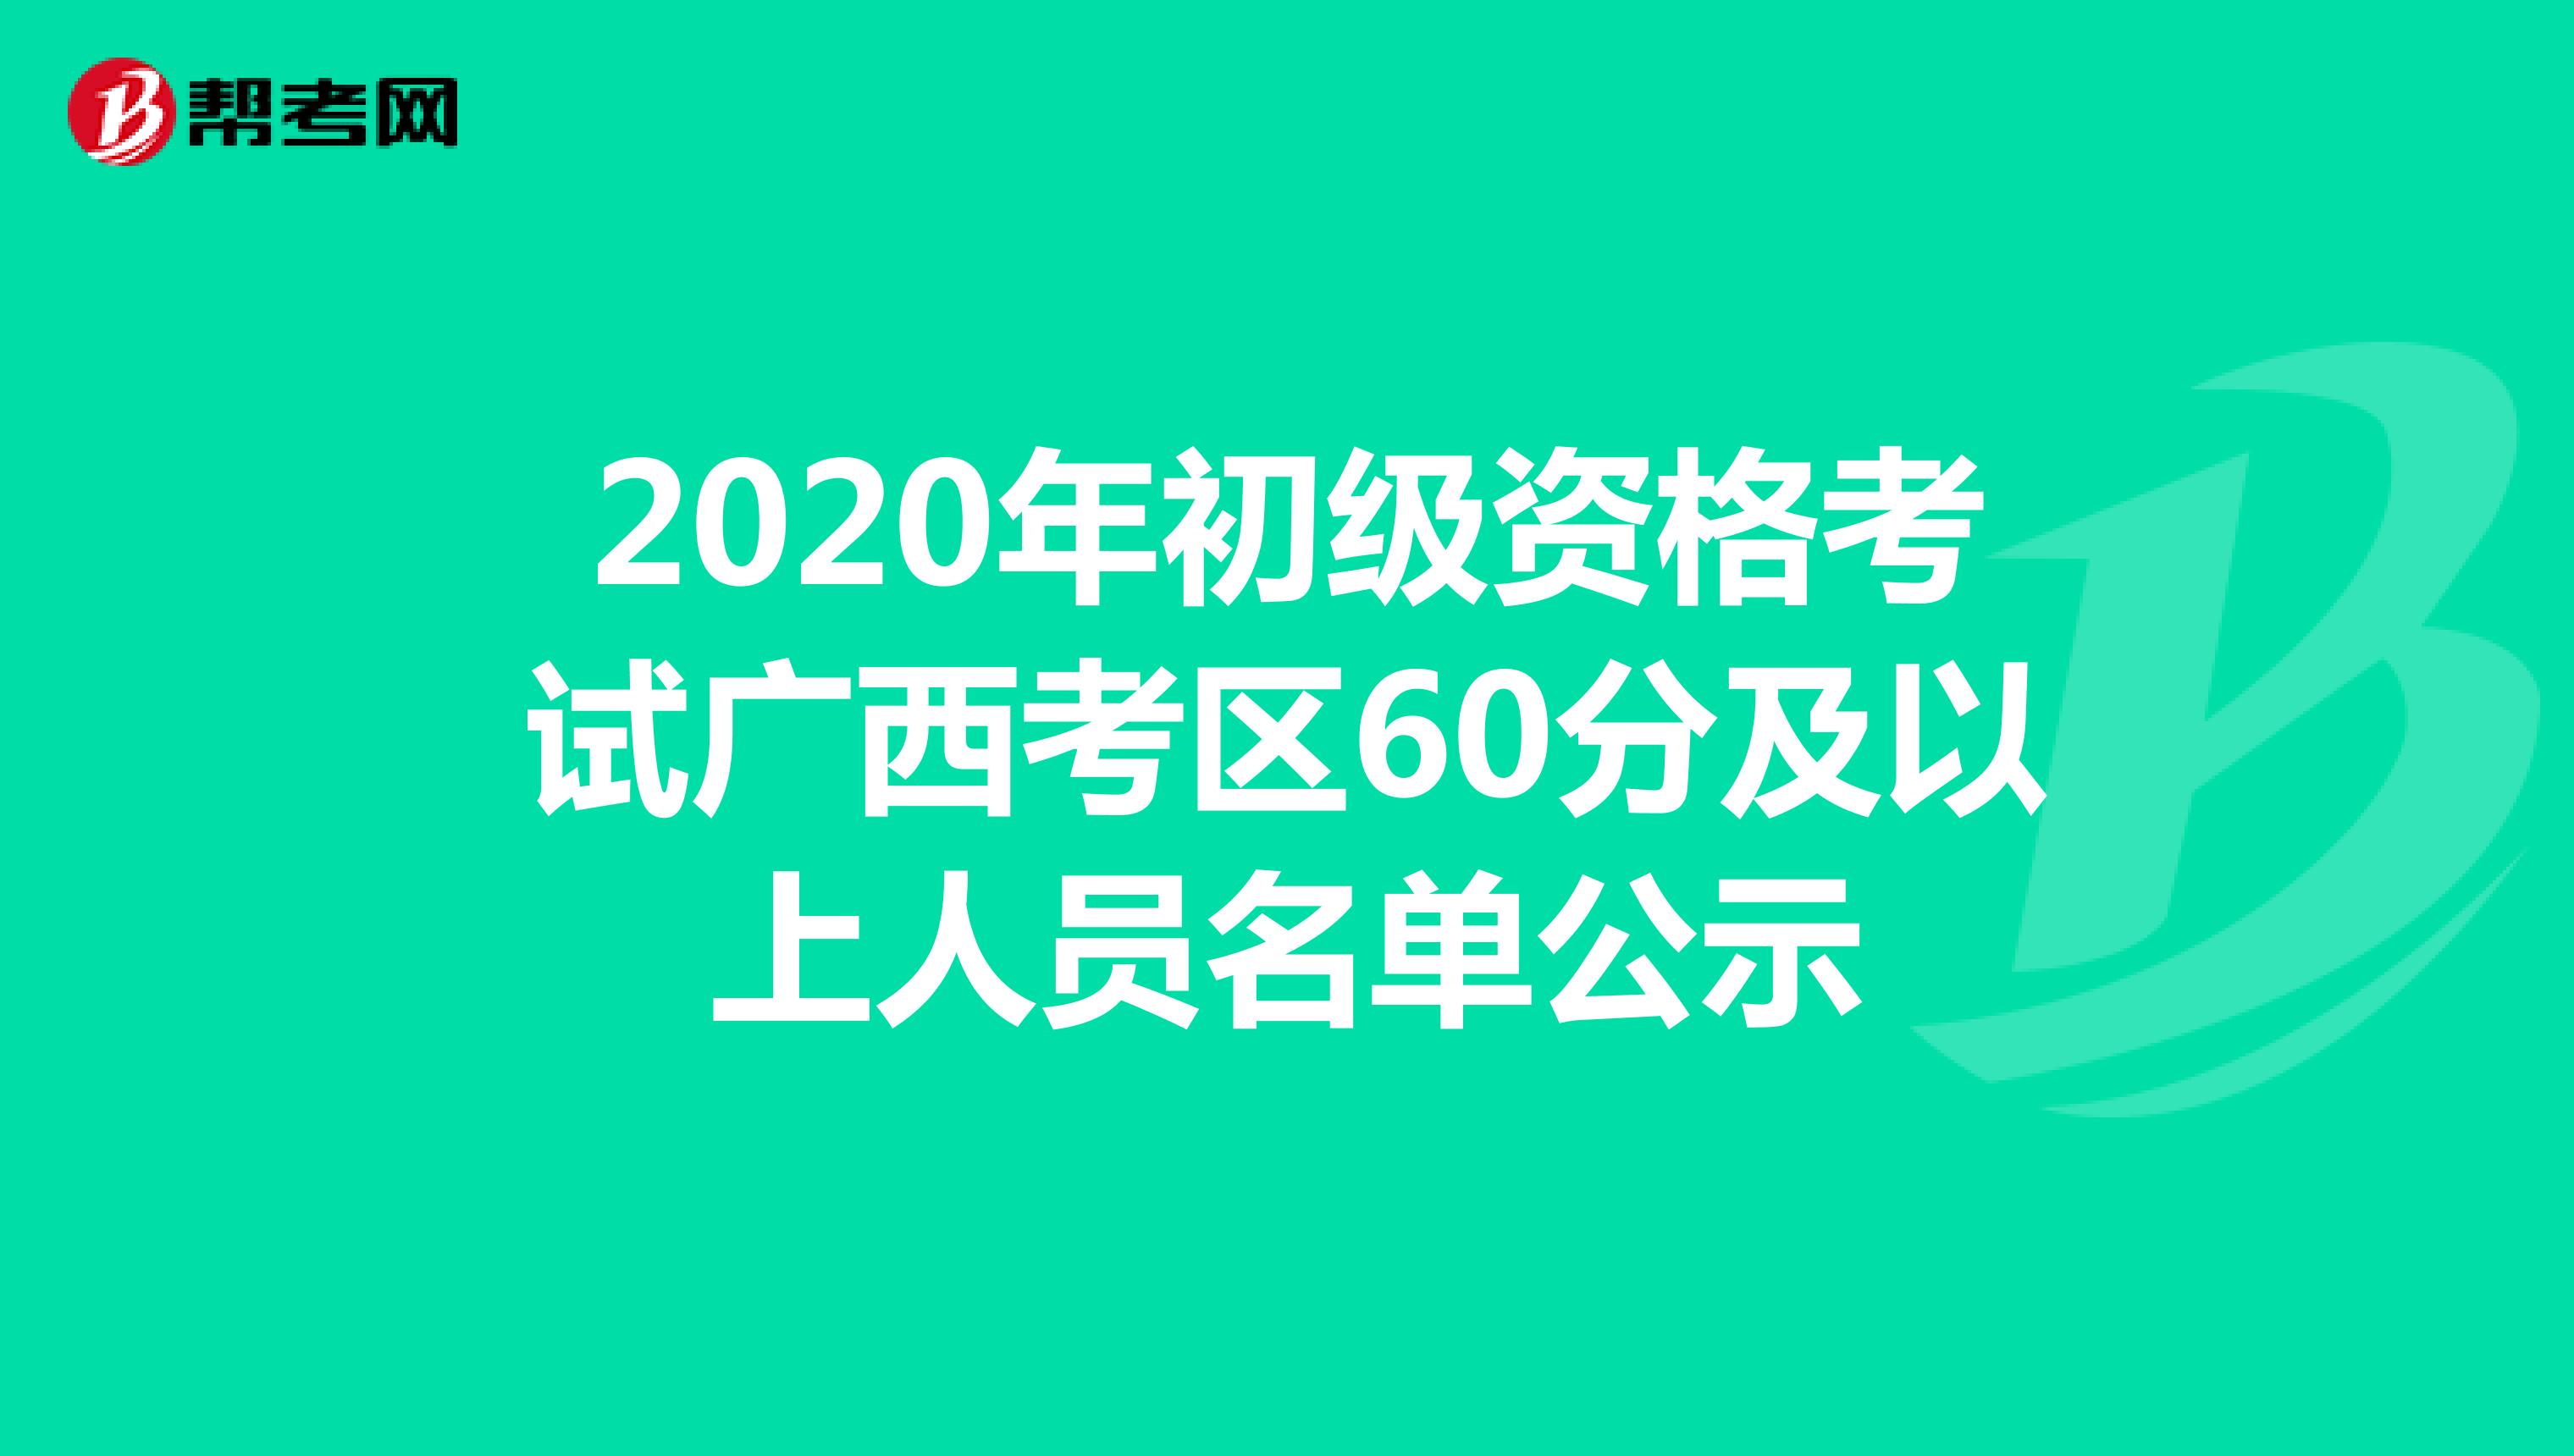 2020年初级资格考试广西考区60分及以上人员名单公示